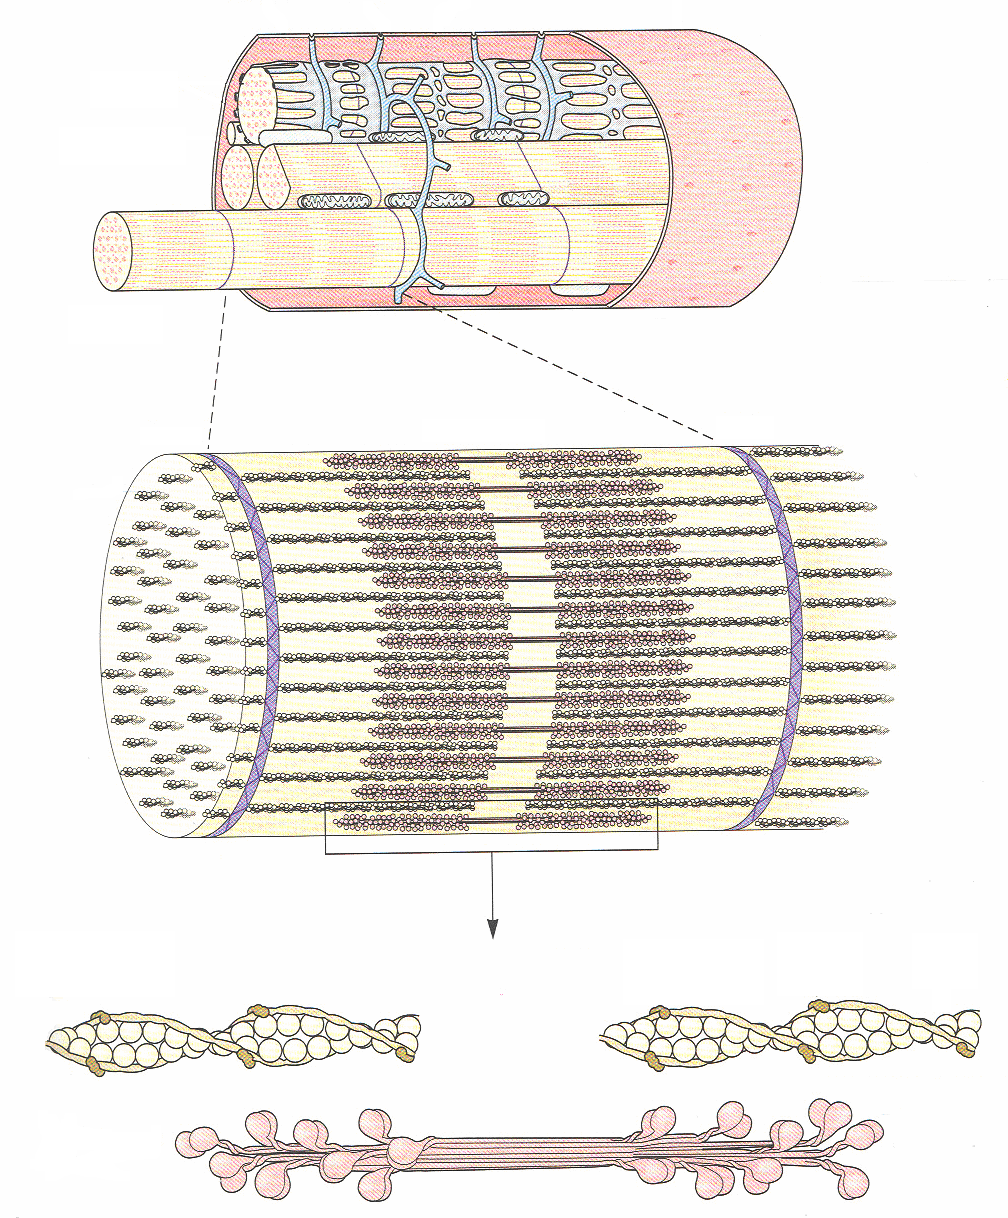 grote aantallen van mitochondriën celmembraan = sarcolemma specifieke spiercelorganellen membraneuze sacroplasmatisch reticulum (~endoplasmatisch reticulum) grote bundels micorfibrillen donkere en